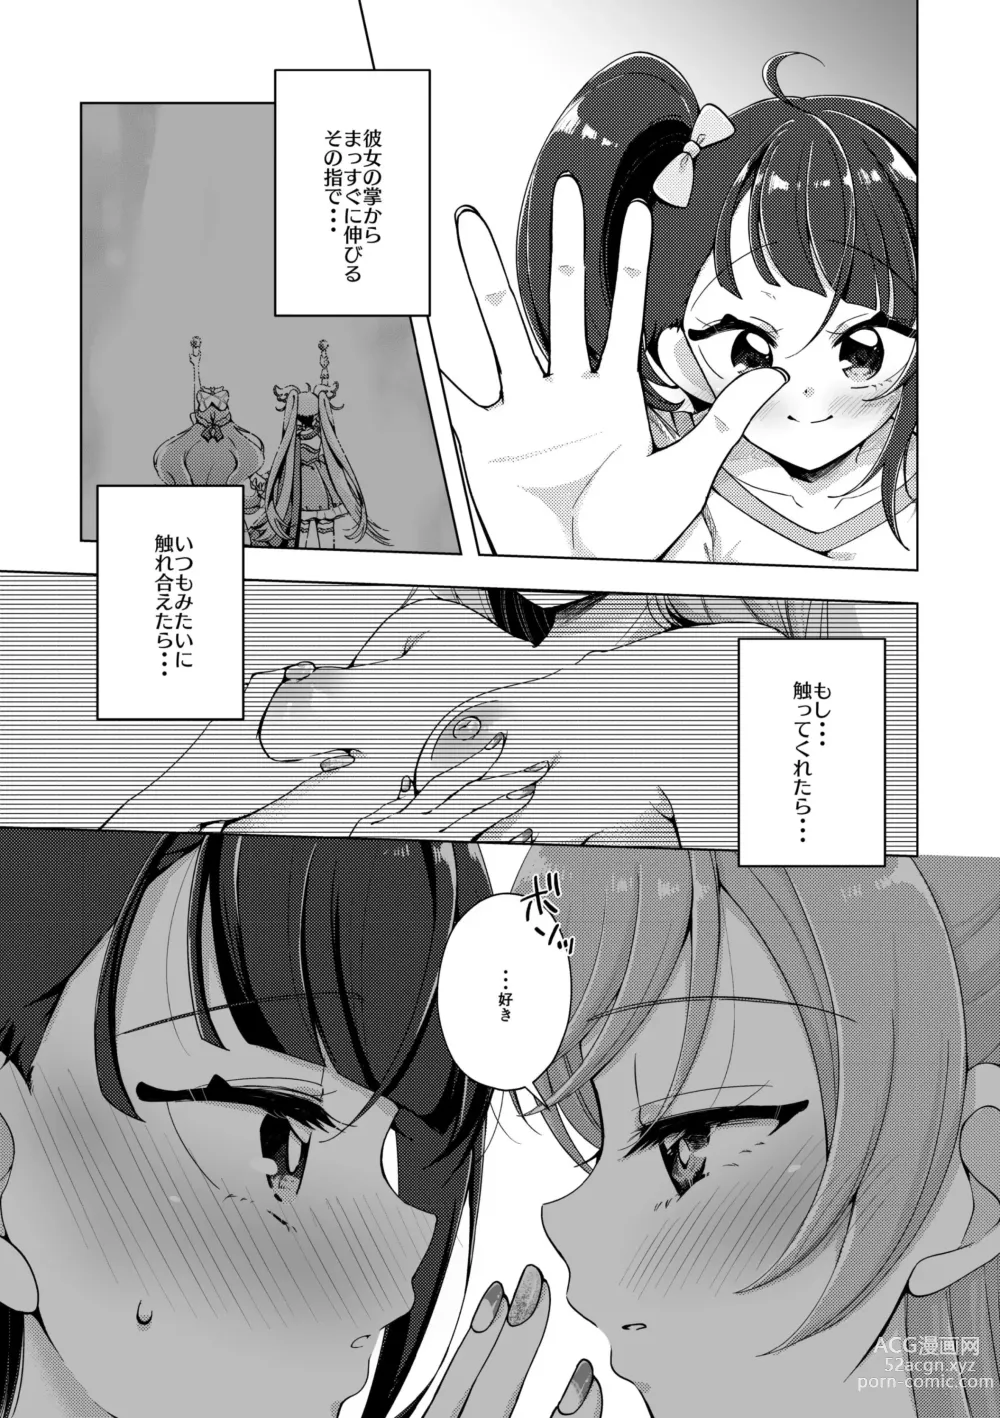 Page 6 of doujinshi Zankou no Sora